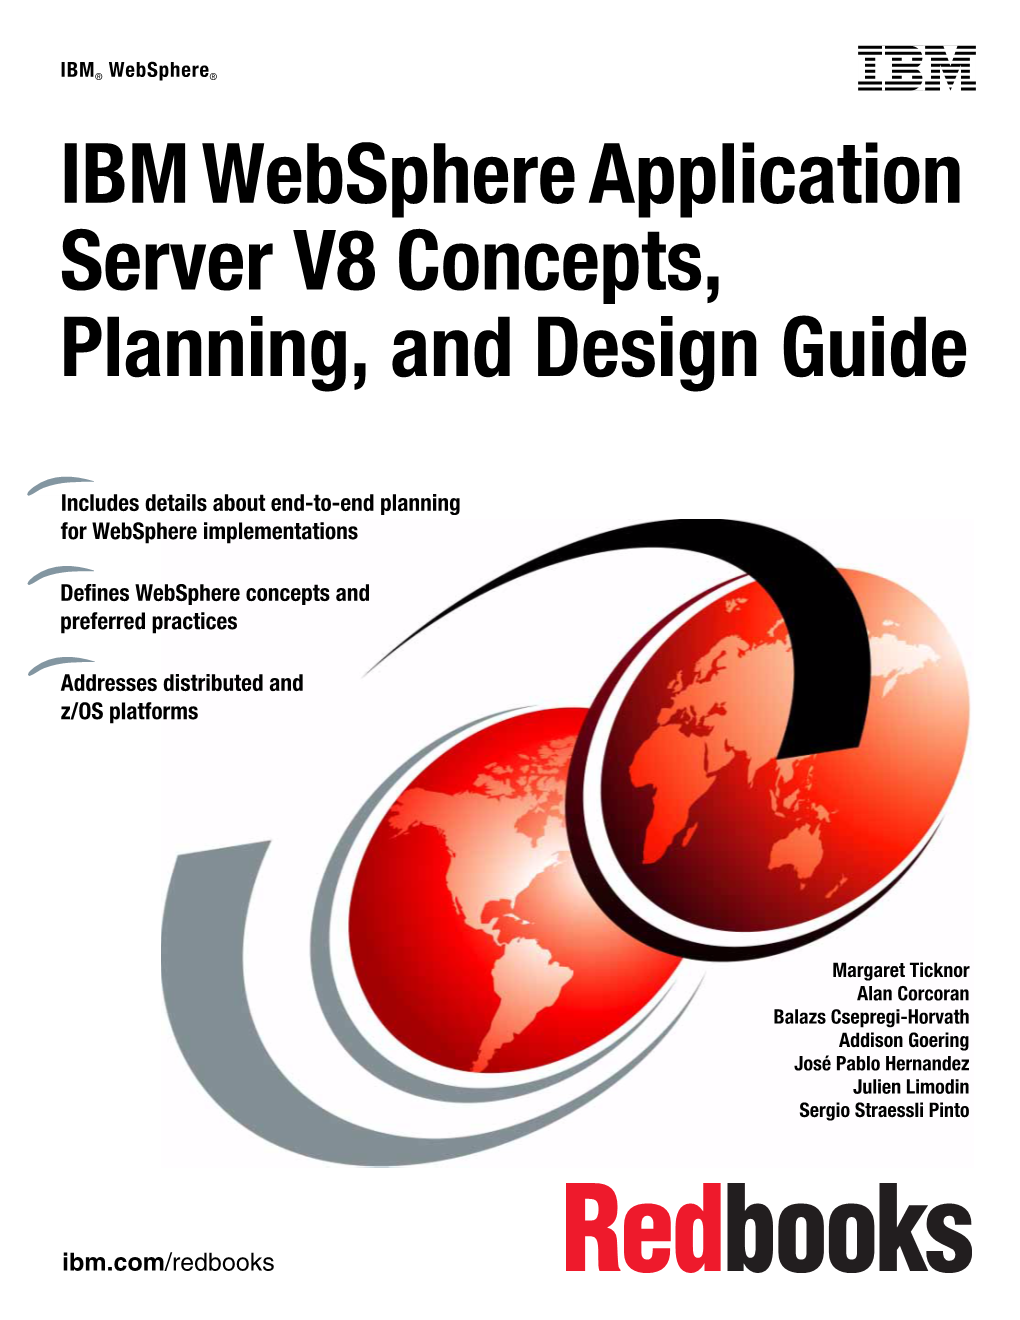 IBM Websphere Application Server V8 Concepts, Planning, and Design Guide